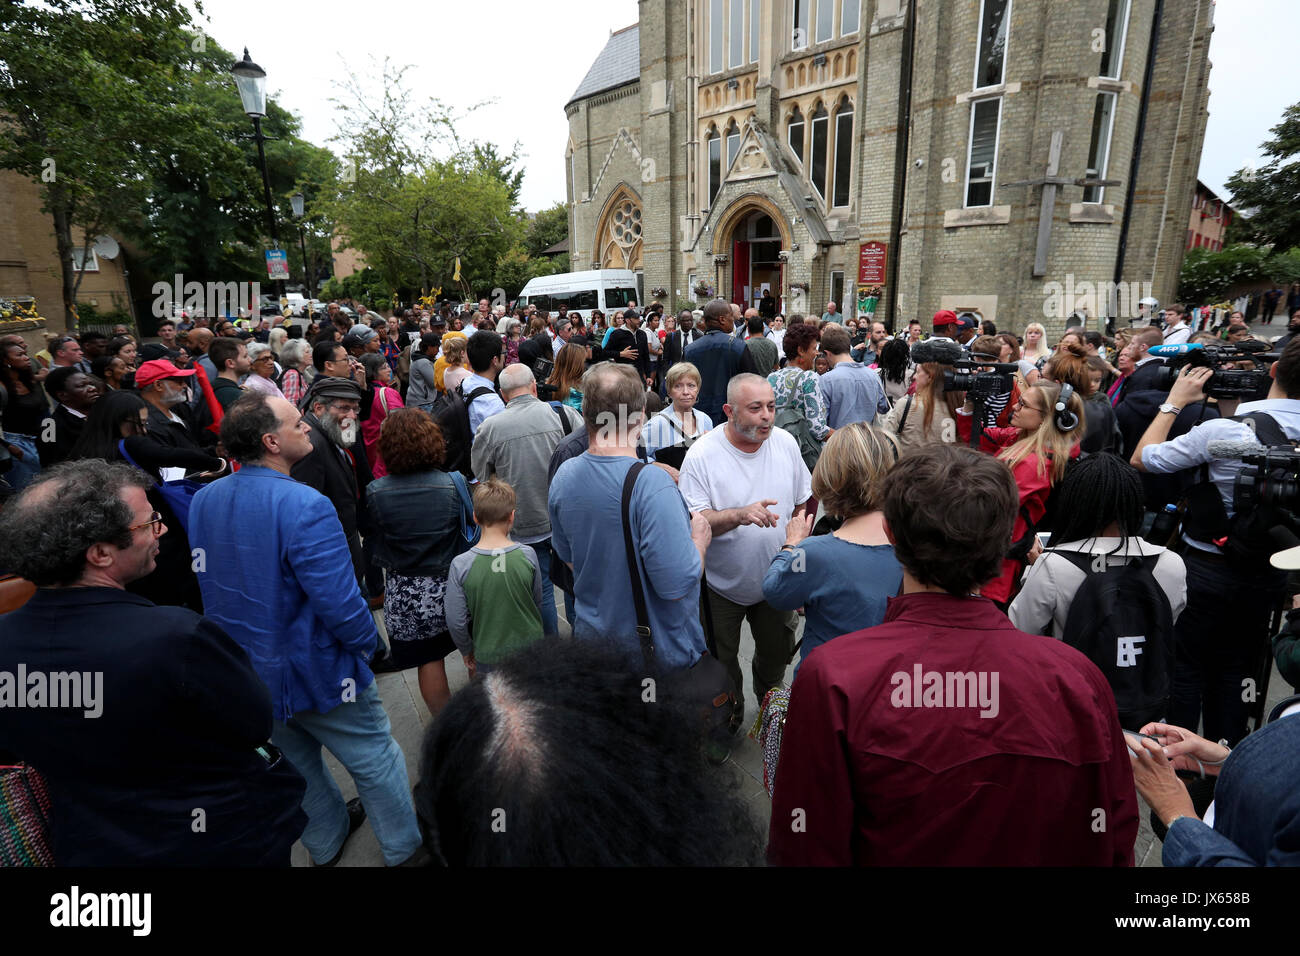 Las personas asistir a una marcha silenciosa para honrar a quienes murieron en el desastre de la torre Grenfell, fuera de la Iglesia Metodista de Notting Hill en Londres. Foto de stock